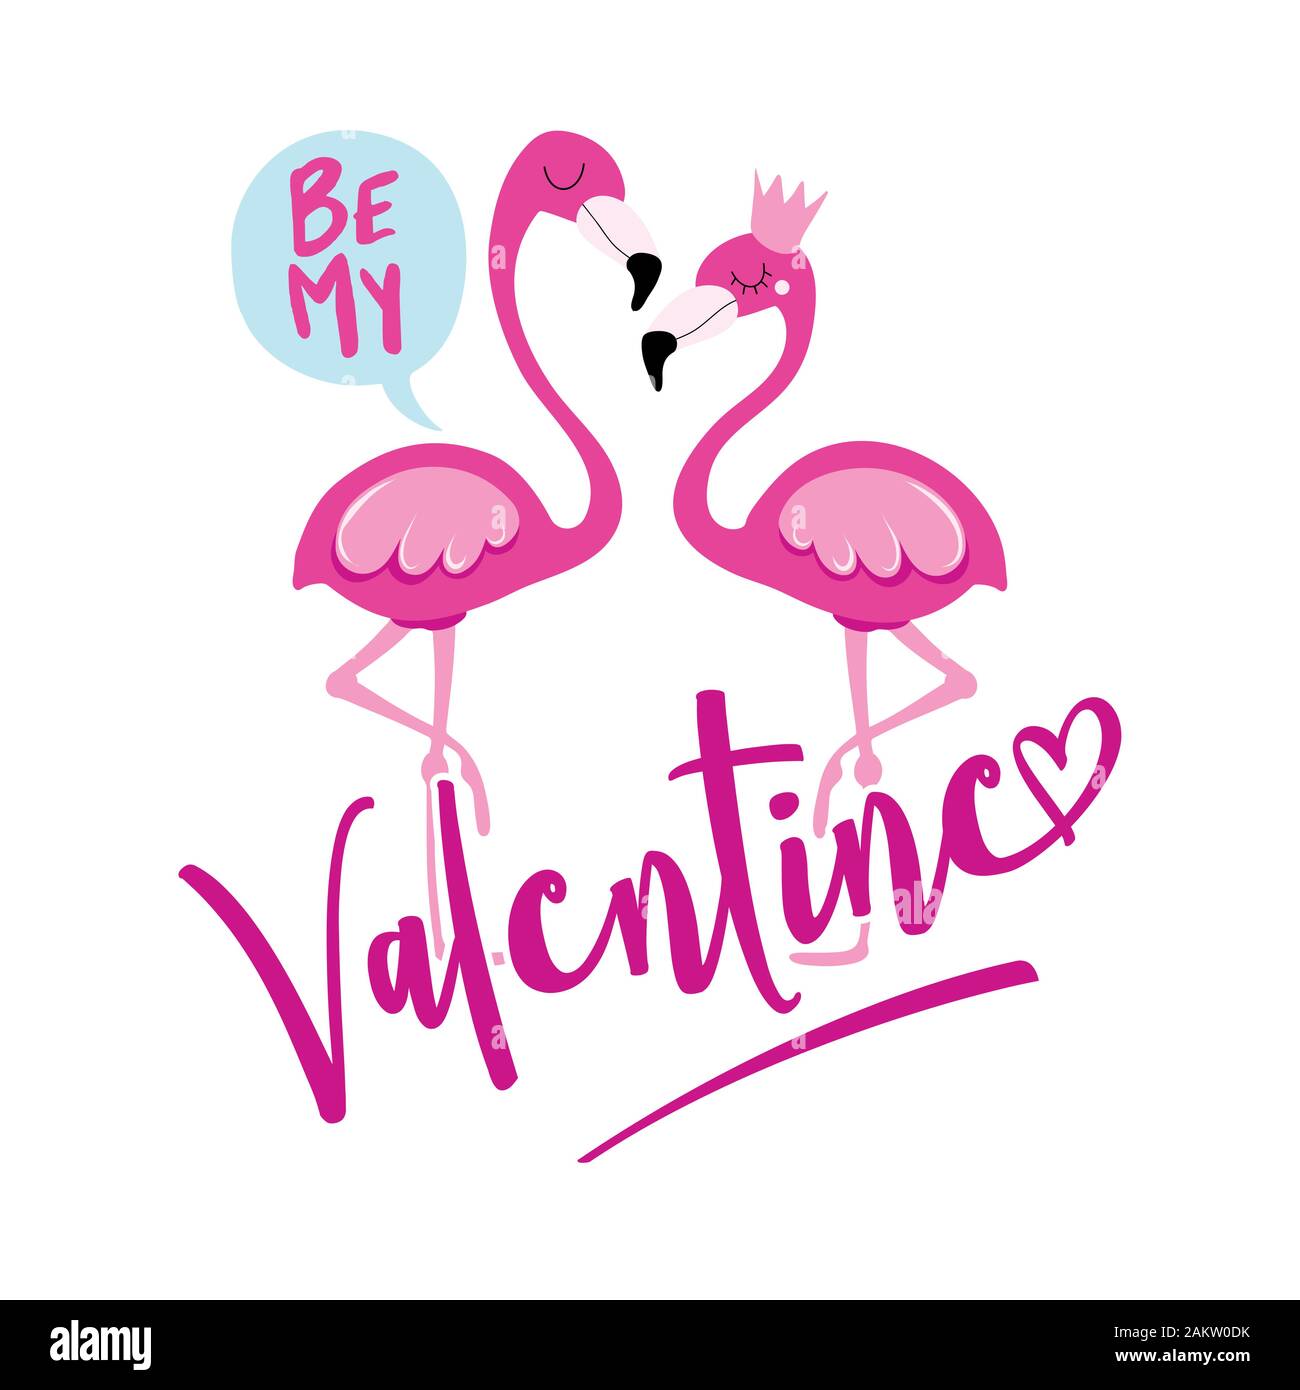 My Valentine - Valentinstag handdrawn Abbildung mit zwei Flamingo Paar in der Liebe sein. Handgefertigte Schrift drucken. Vector vintage Abbildung mit Stock Vektor